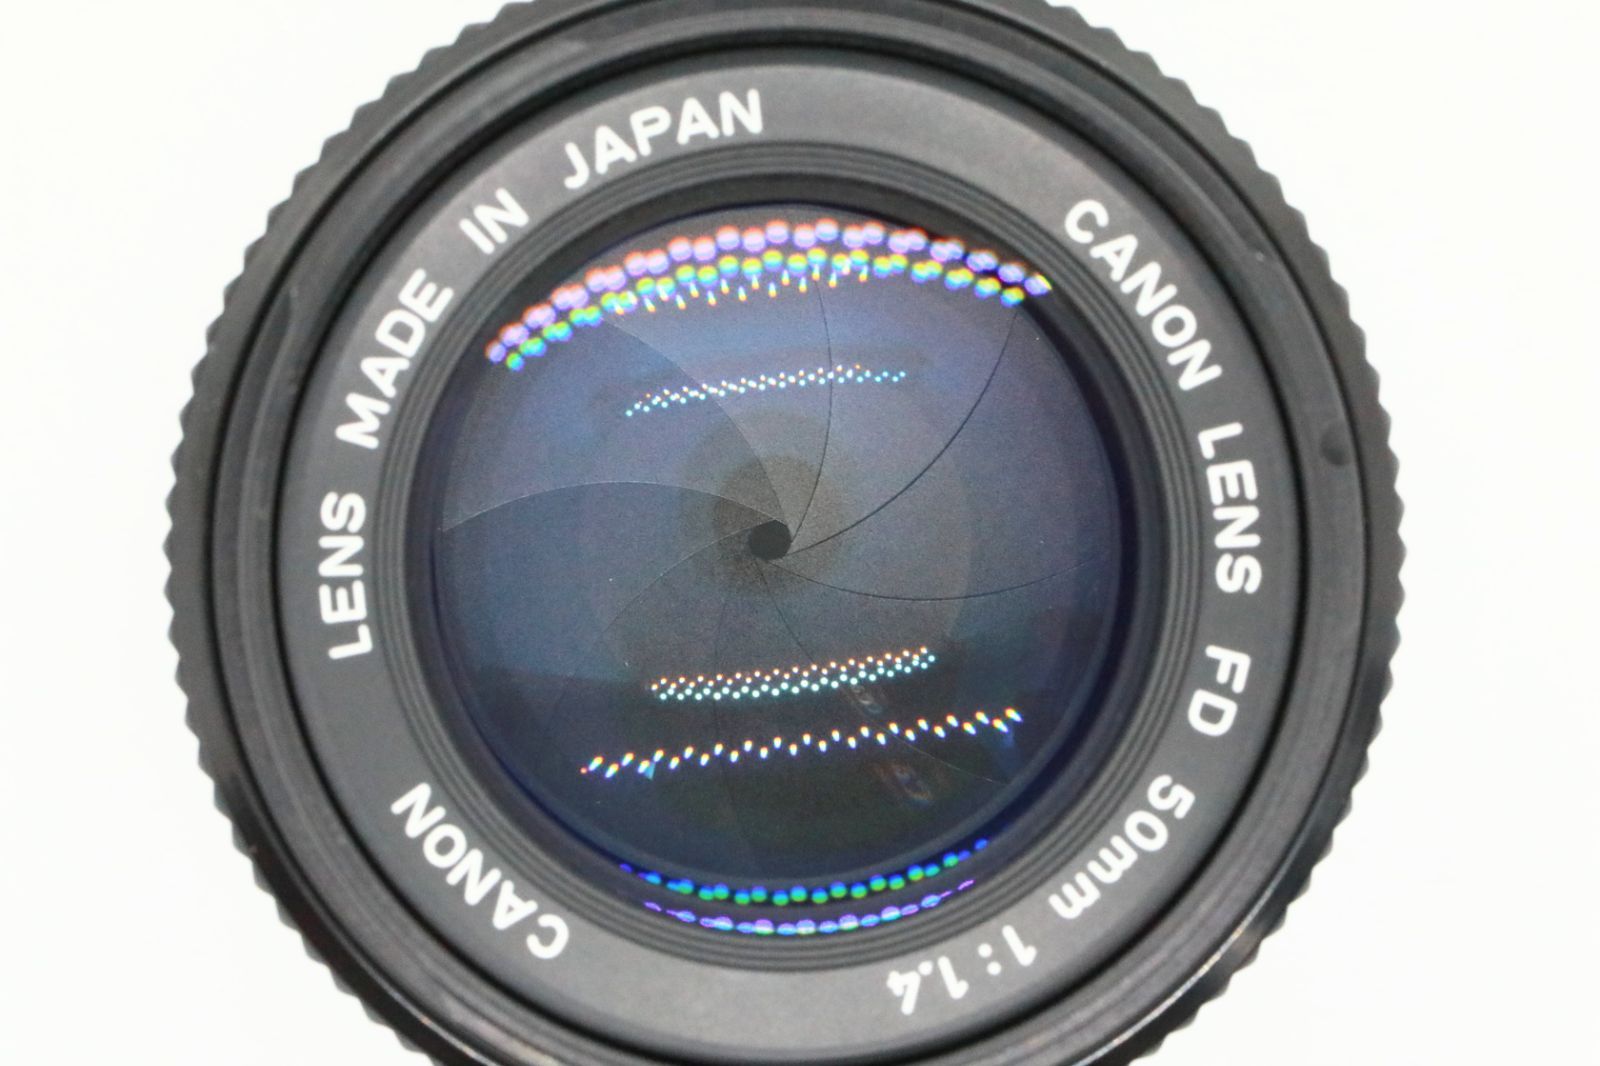 Canon A-1 FD 50 1.4 SSC 露出計動作 即撮影可-